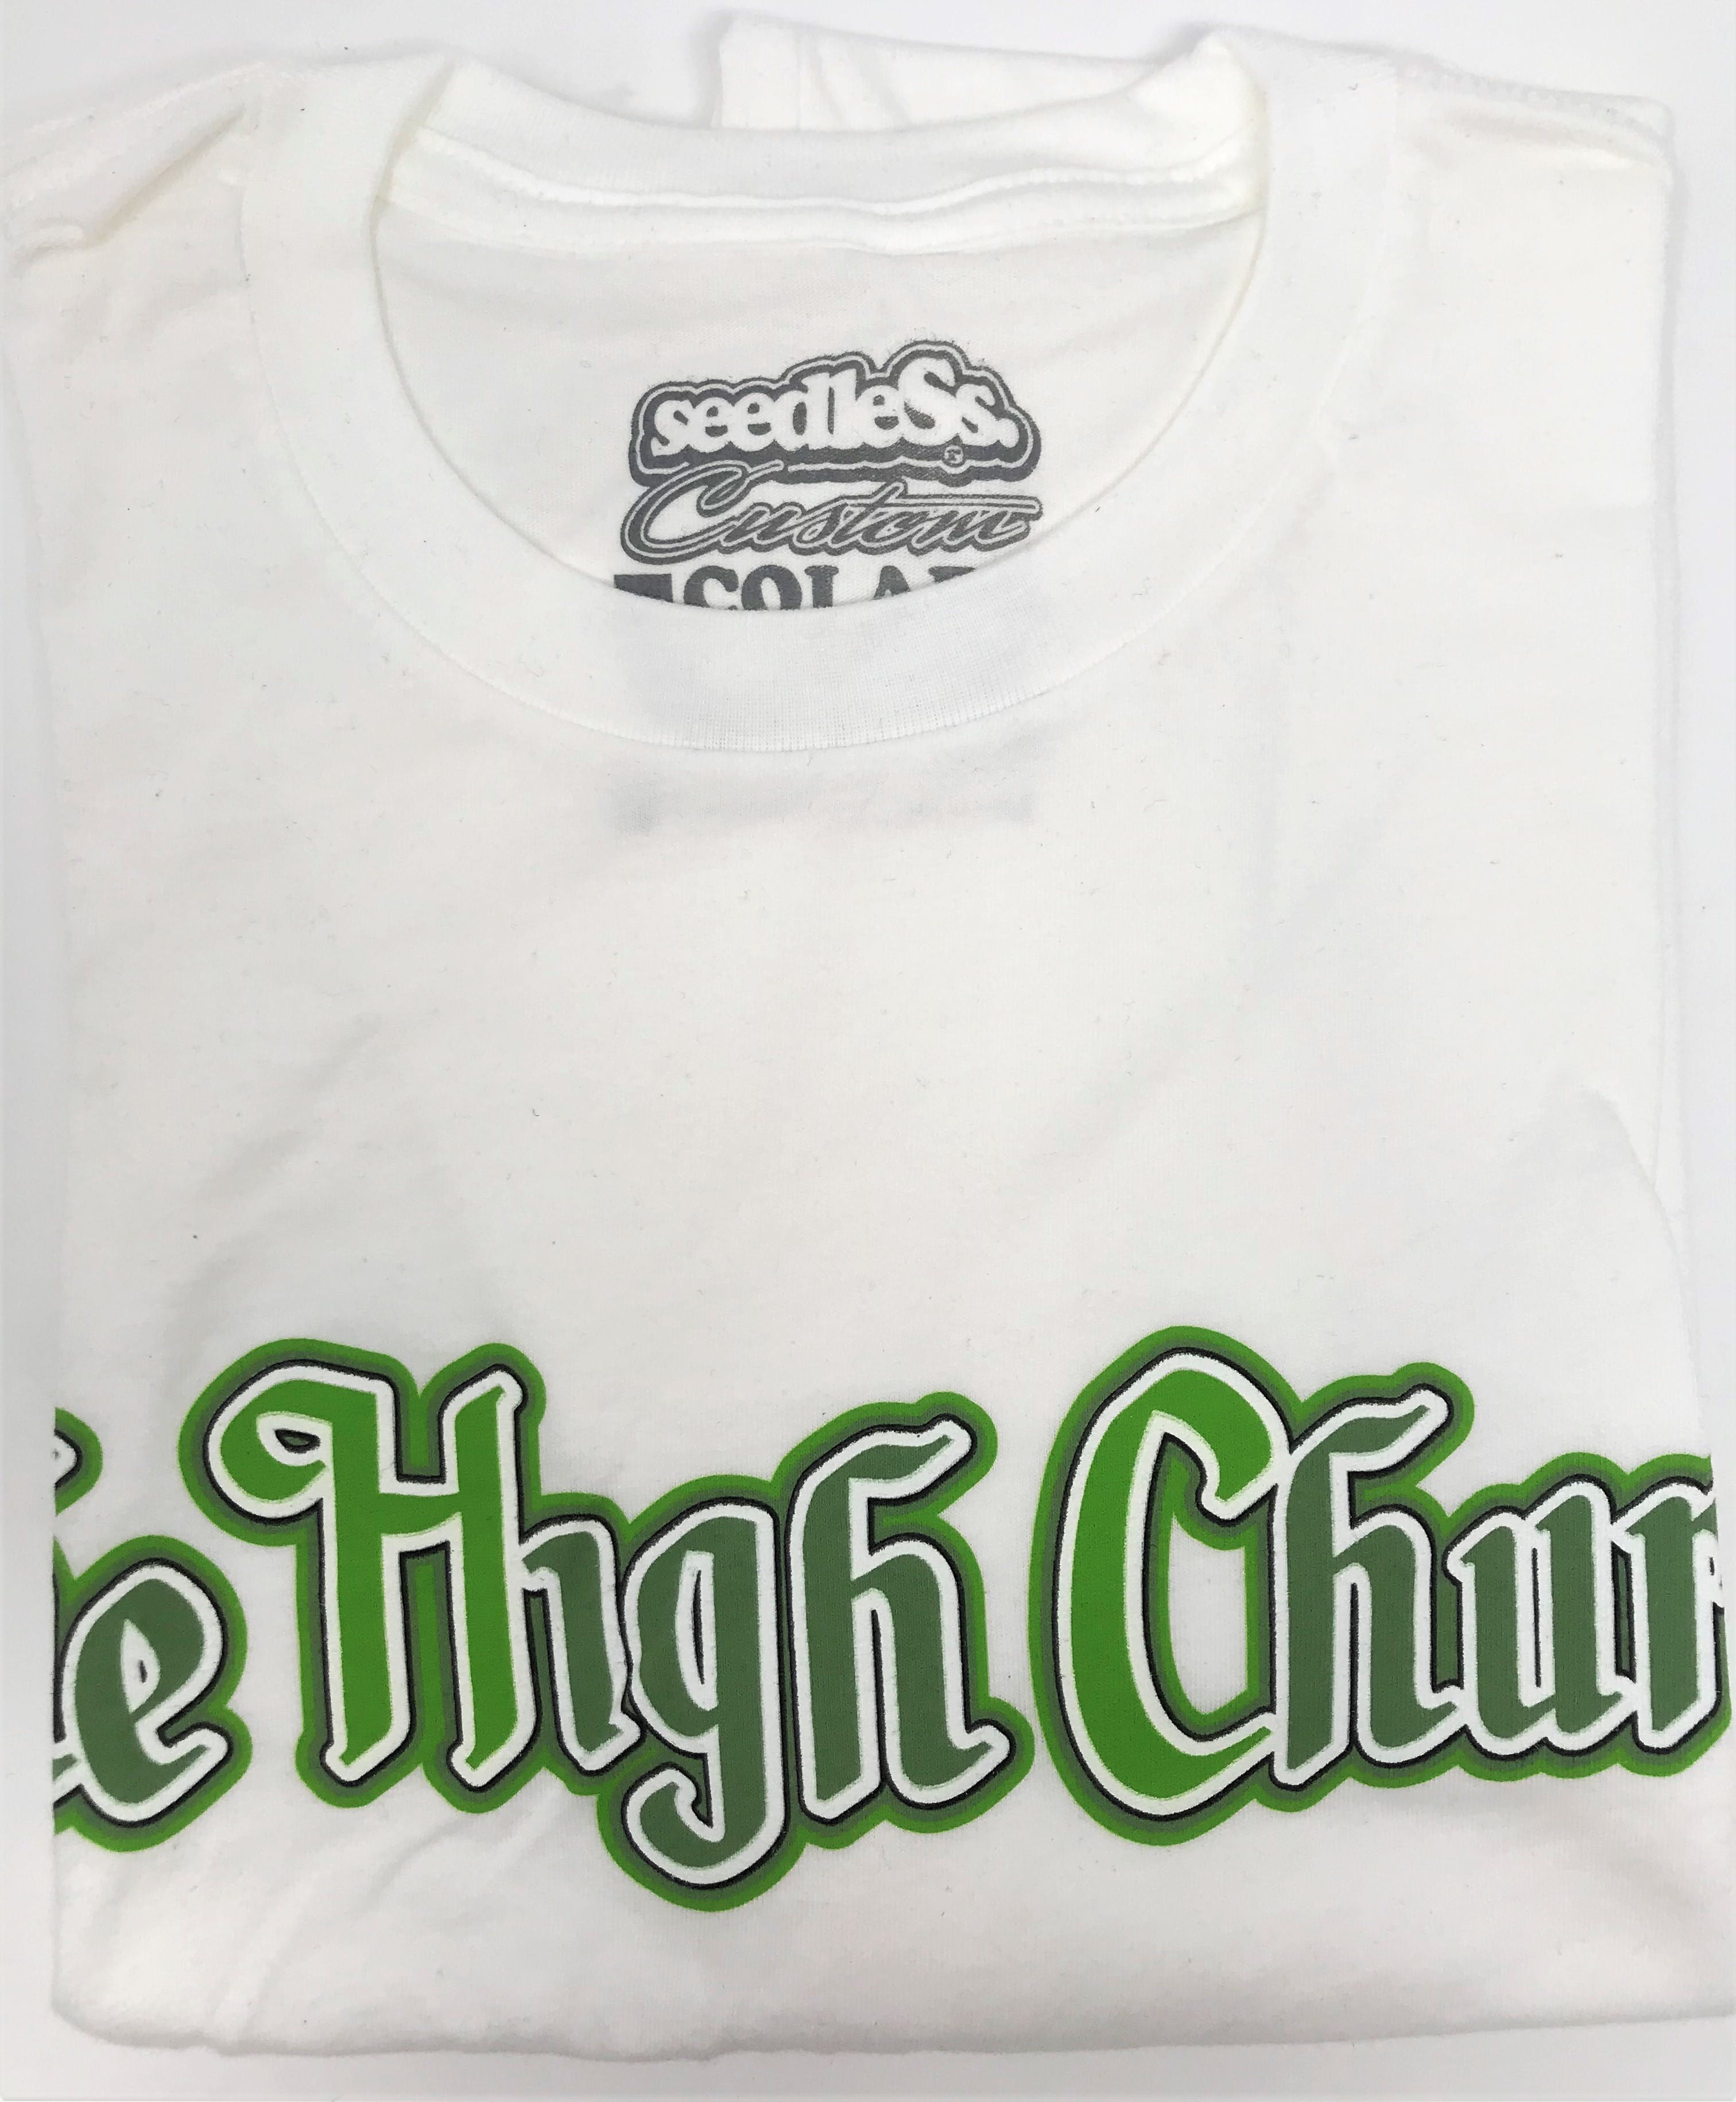 gear-the-high-church-greenwhite-t-shirt